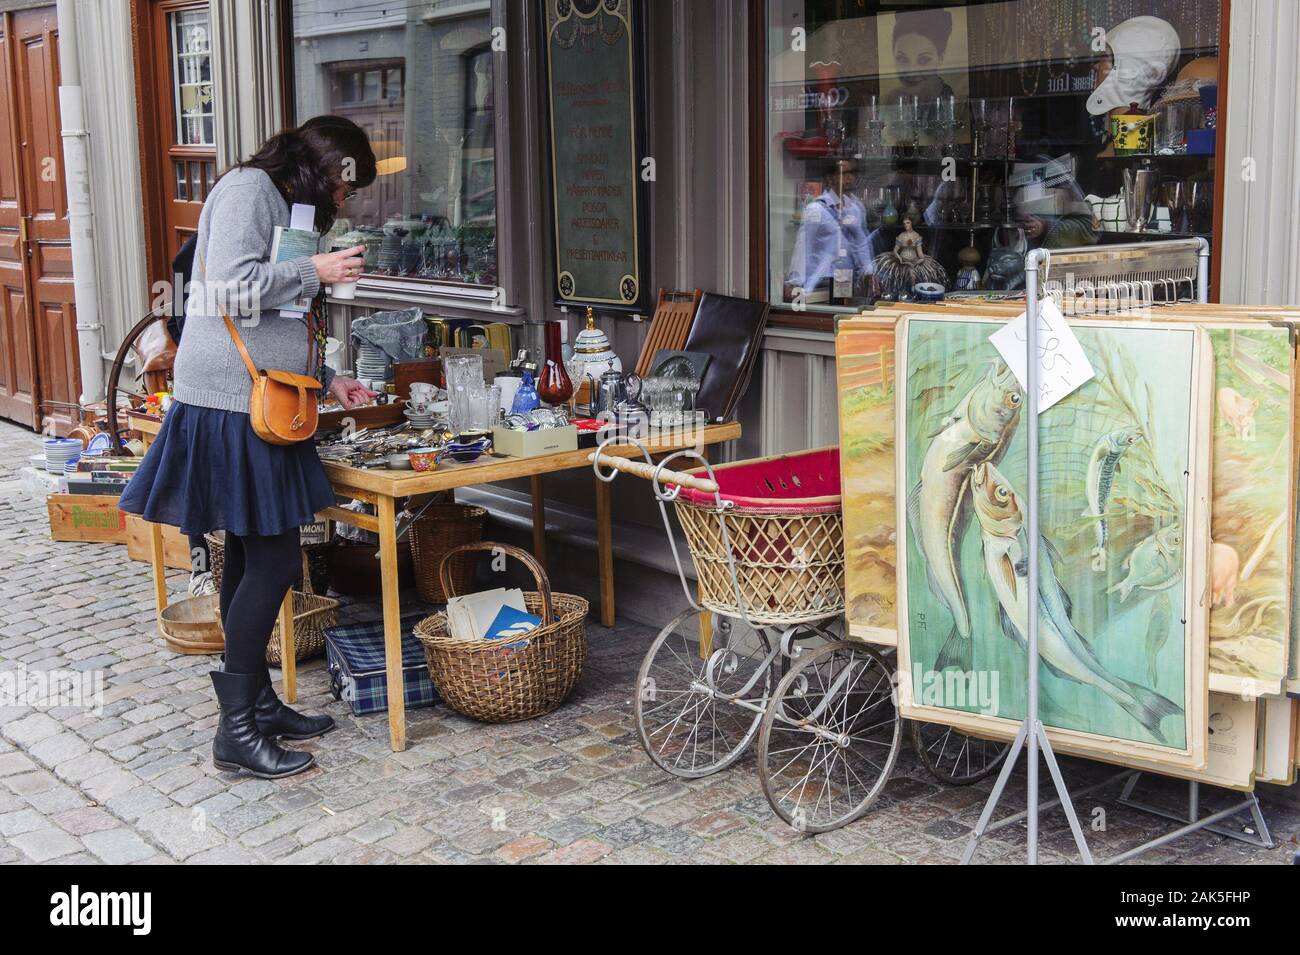 Goeteborg: Boutiquen, Cafe und gallerie im Stadtteil Haga, Schweden Sueden | Utilizzo di tutto il mondo Foto Stock